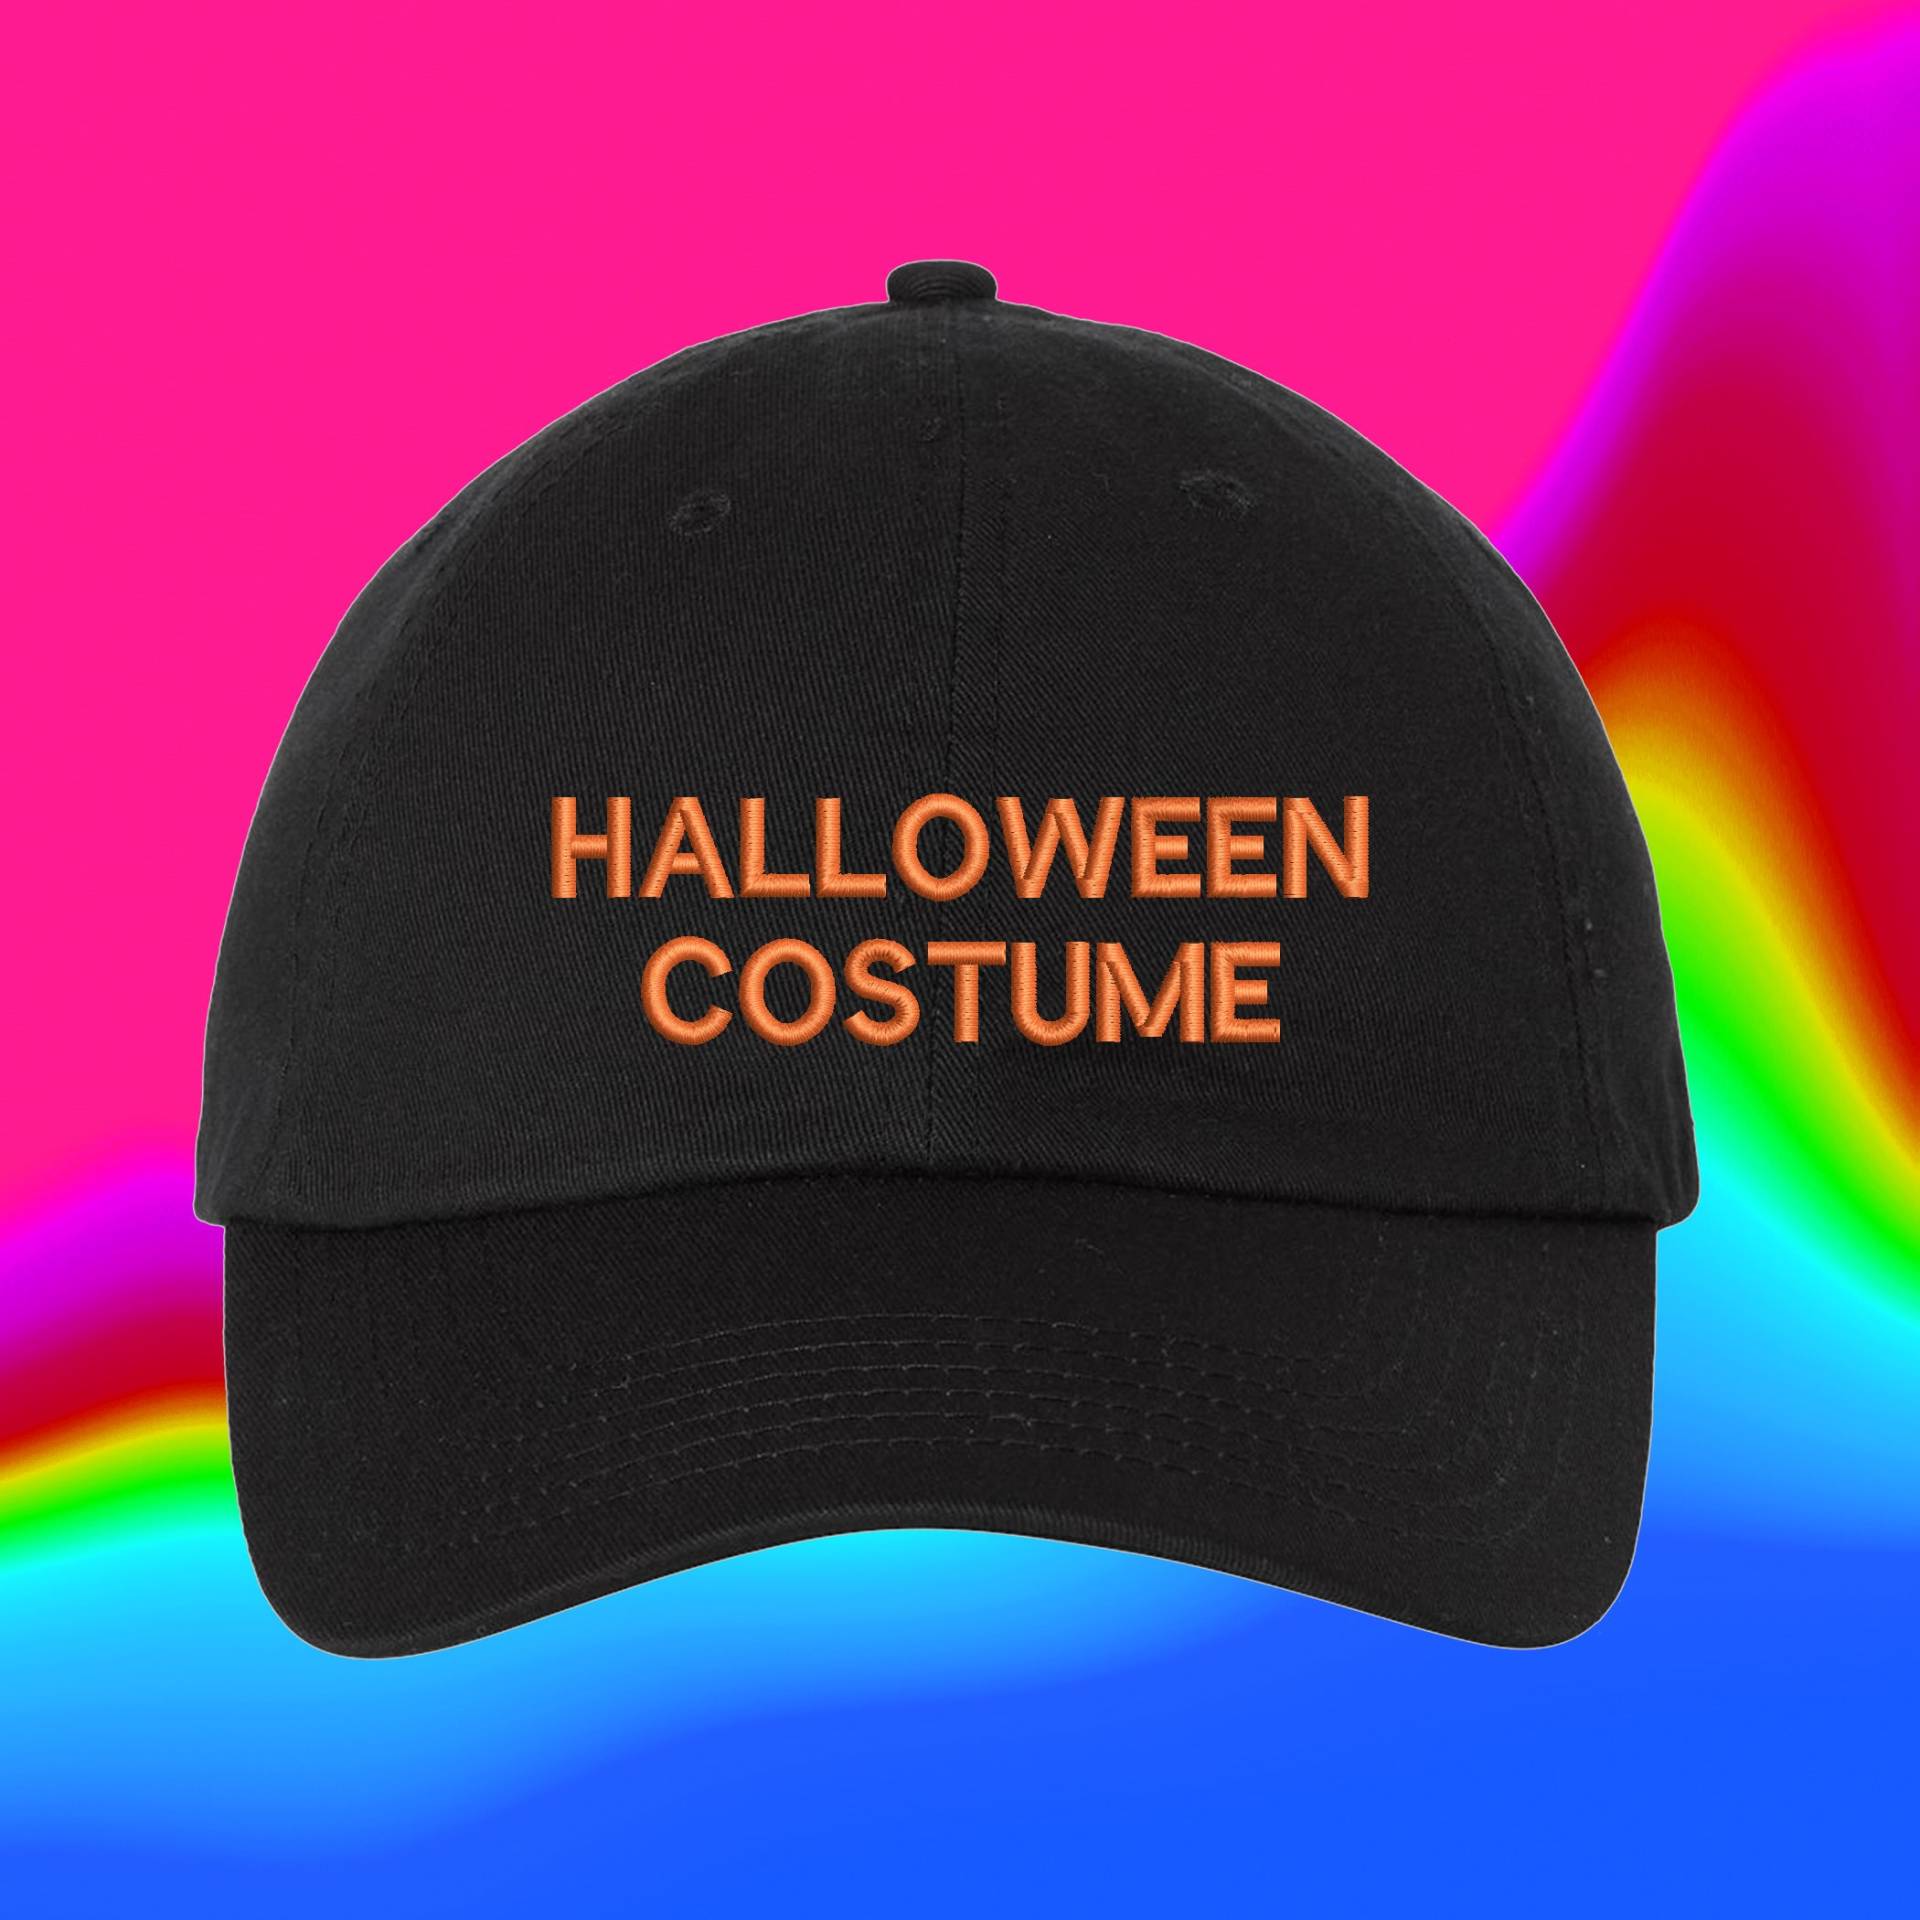 Halloween-Kostüm-Hut | Benutzerdefinierte Farbverstellbare Gestickte Dad-Hut von WheredUGetThatHat